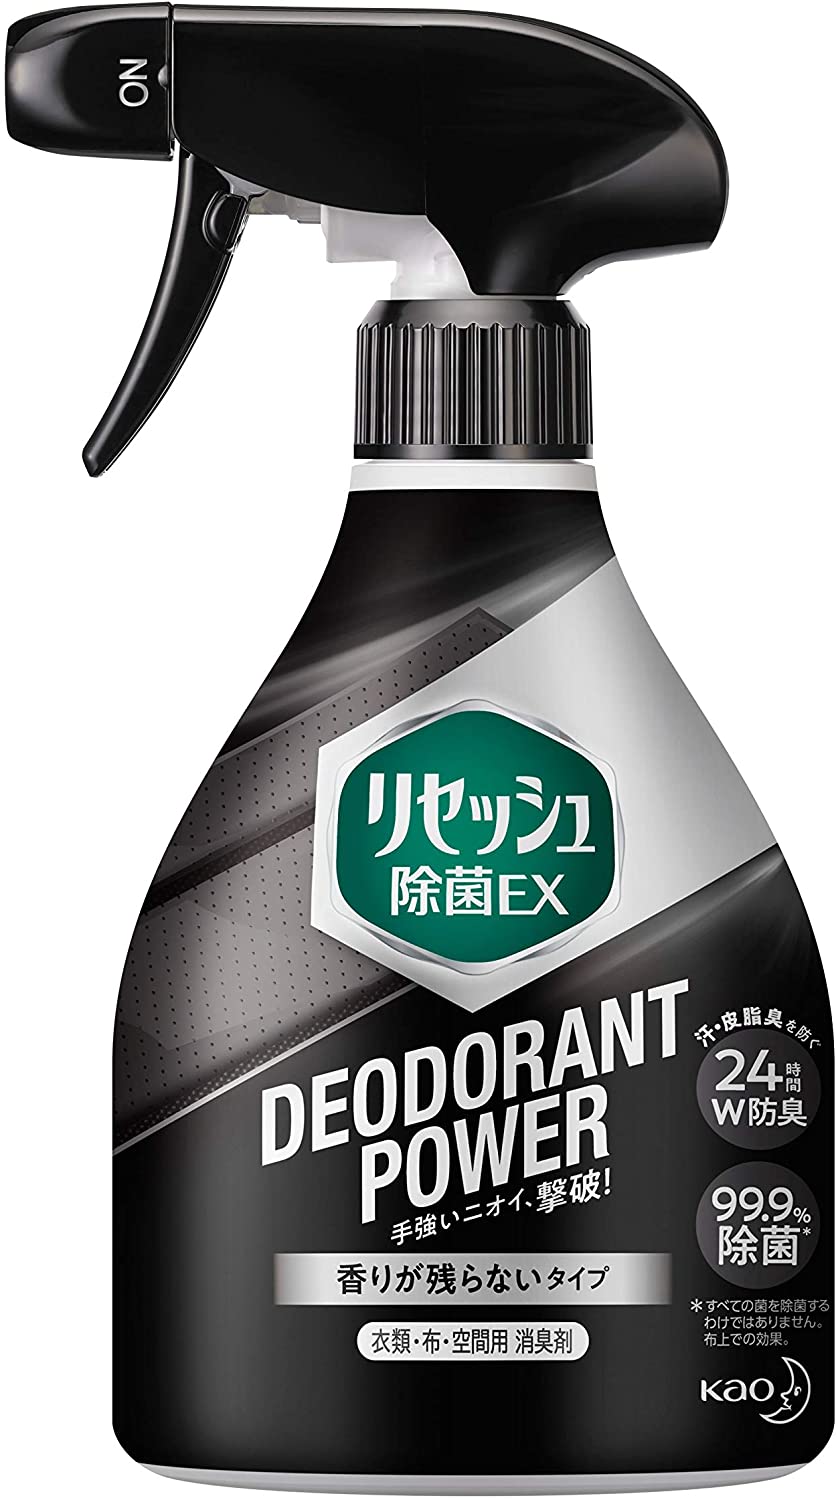 リセッシュ 除菌EX デオドラントパワー 香りが残らないタイプの商品画像1 